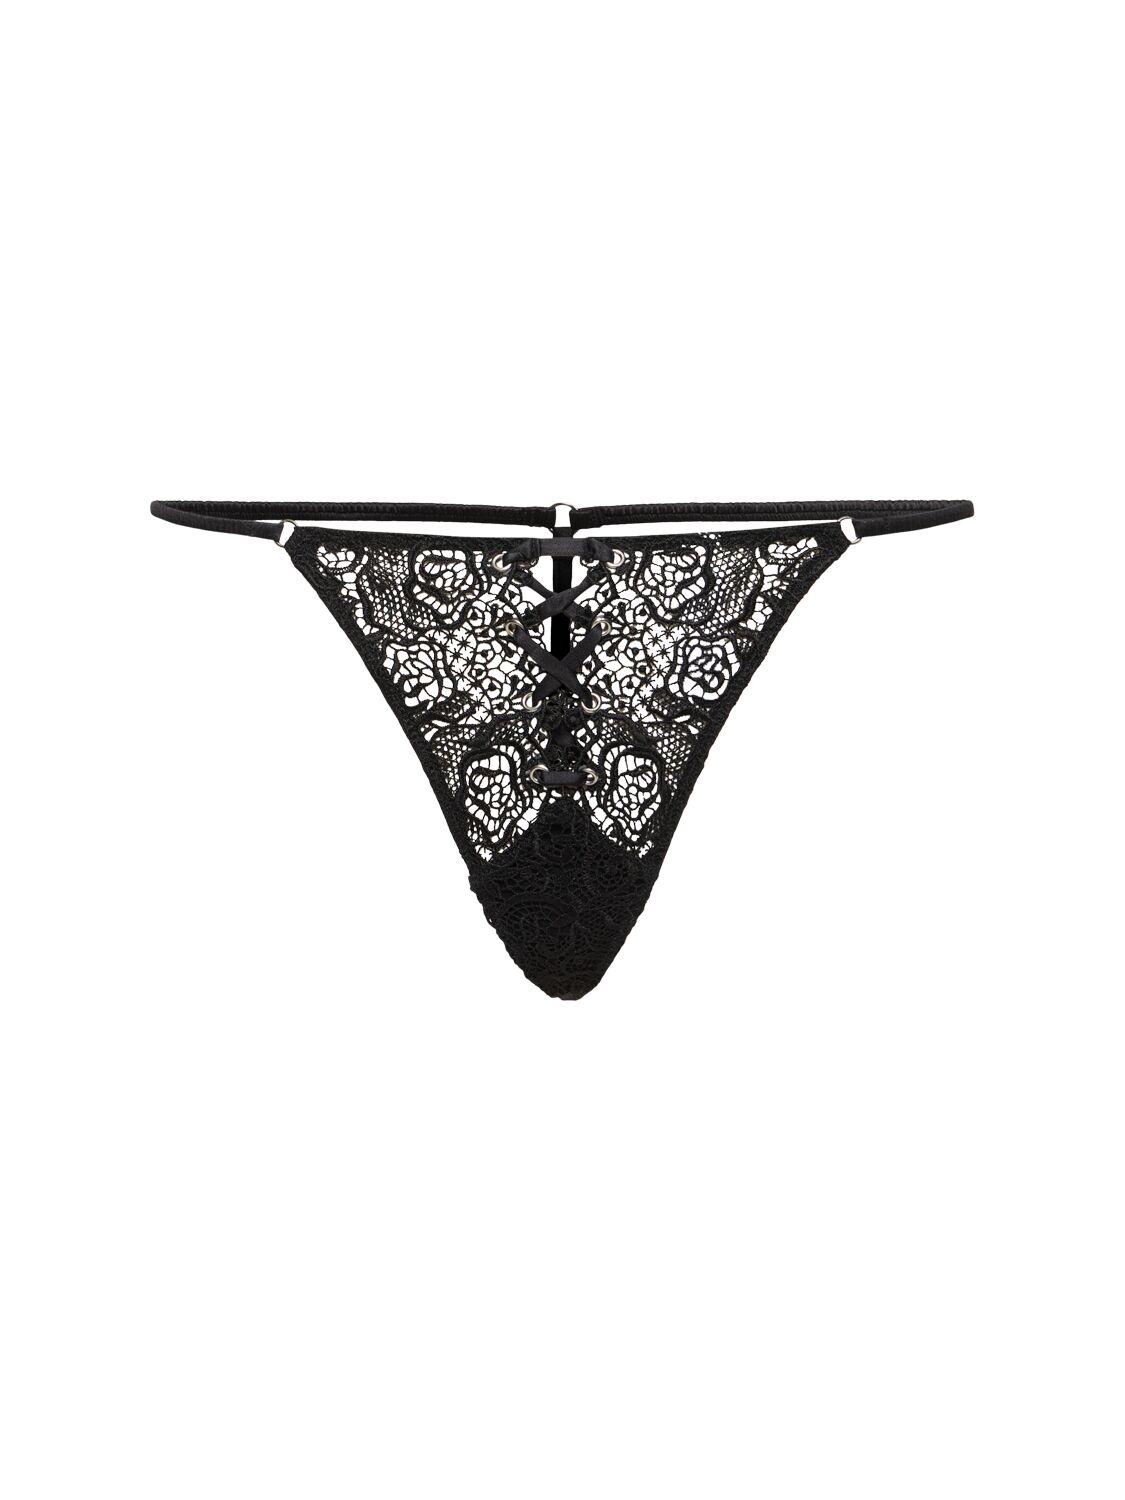 Fleur Du Mal Grommet Embroidered Thong In Black